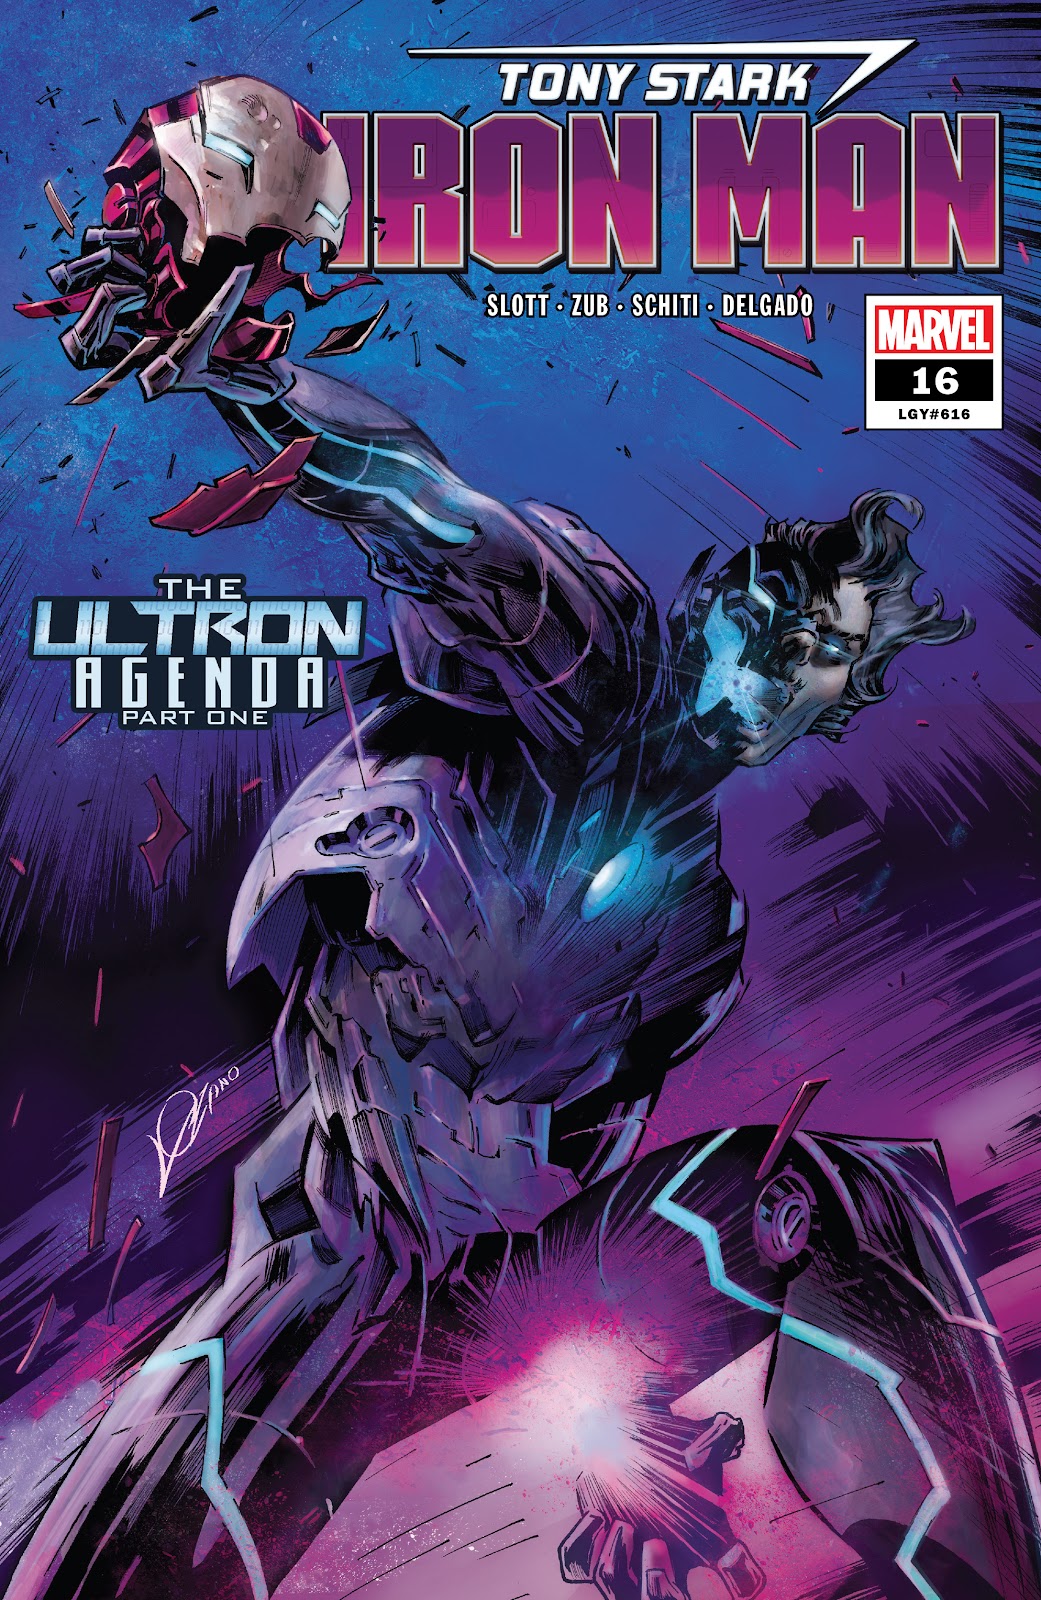 Tony Stark: Iron Man issue 16 - Page 1